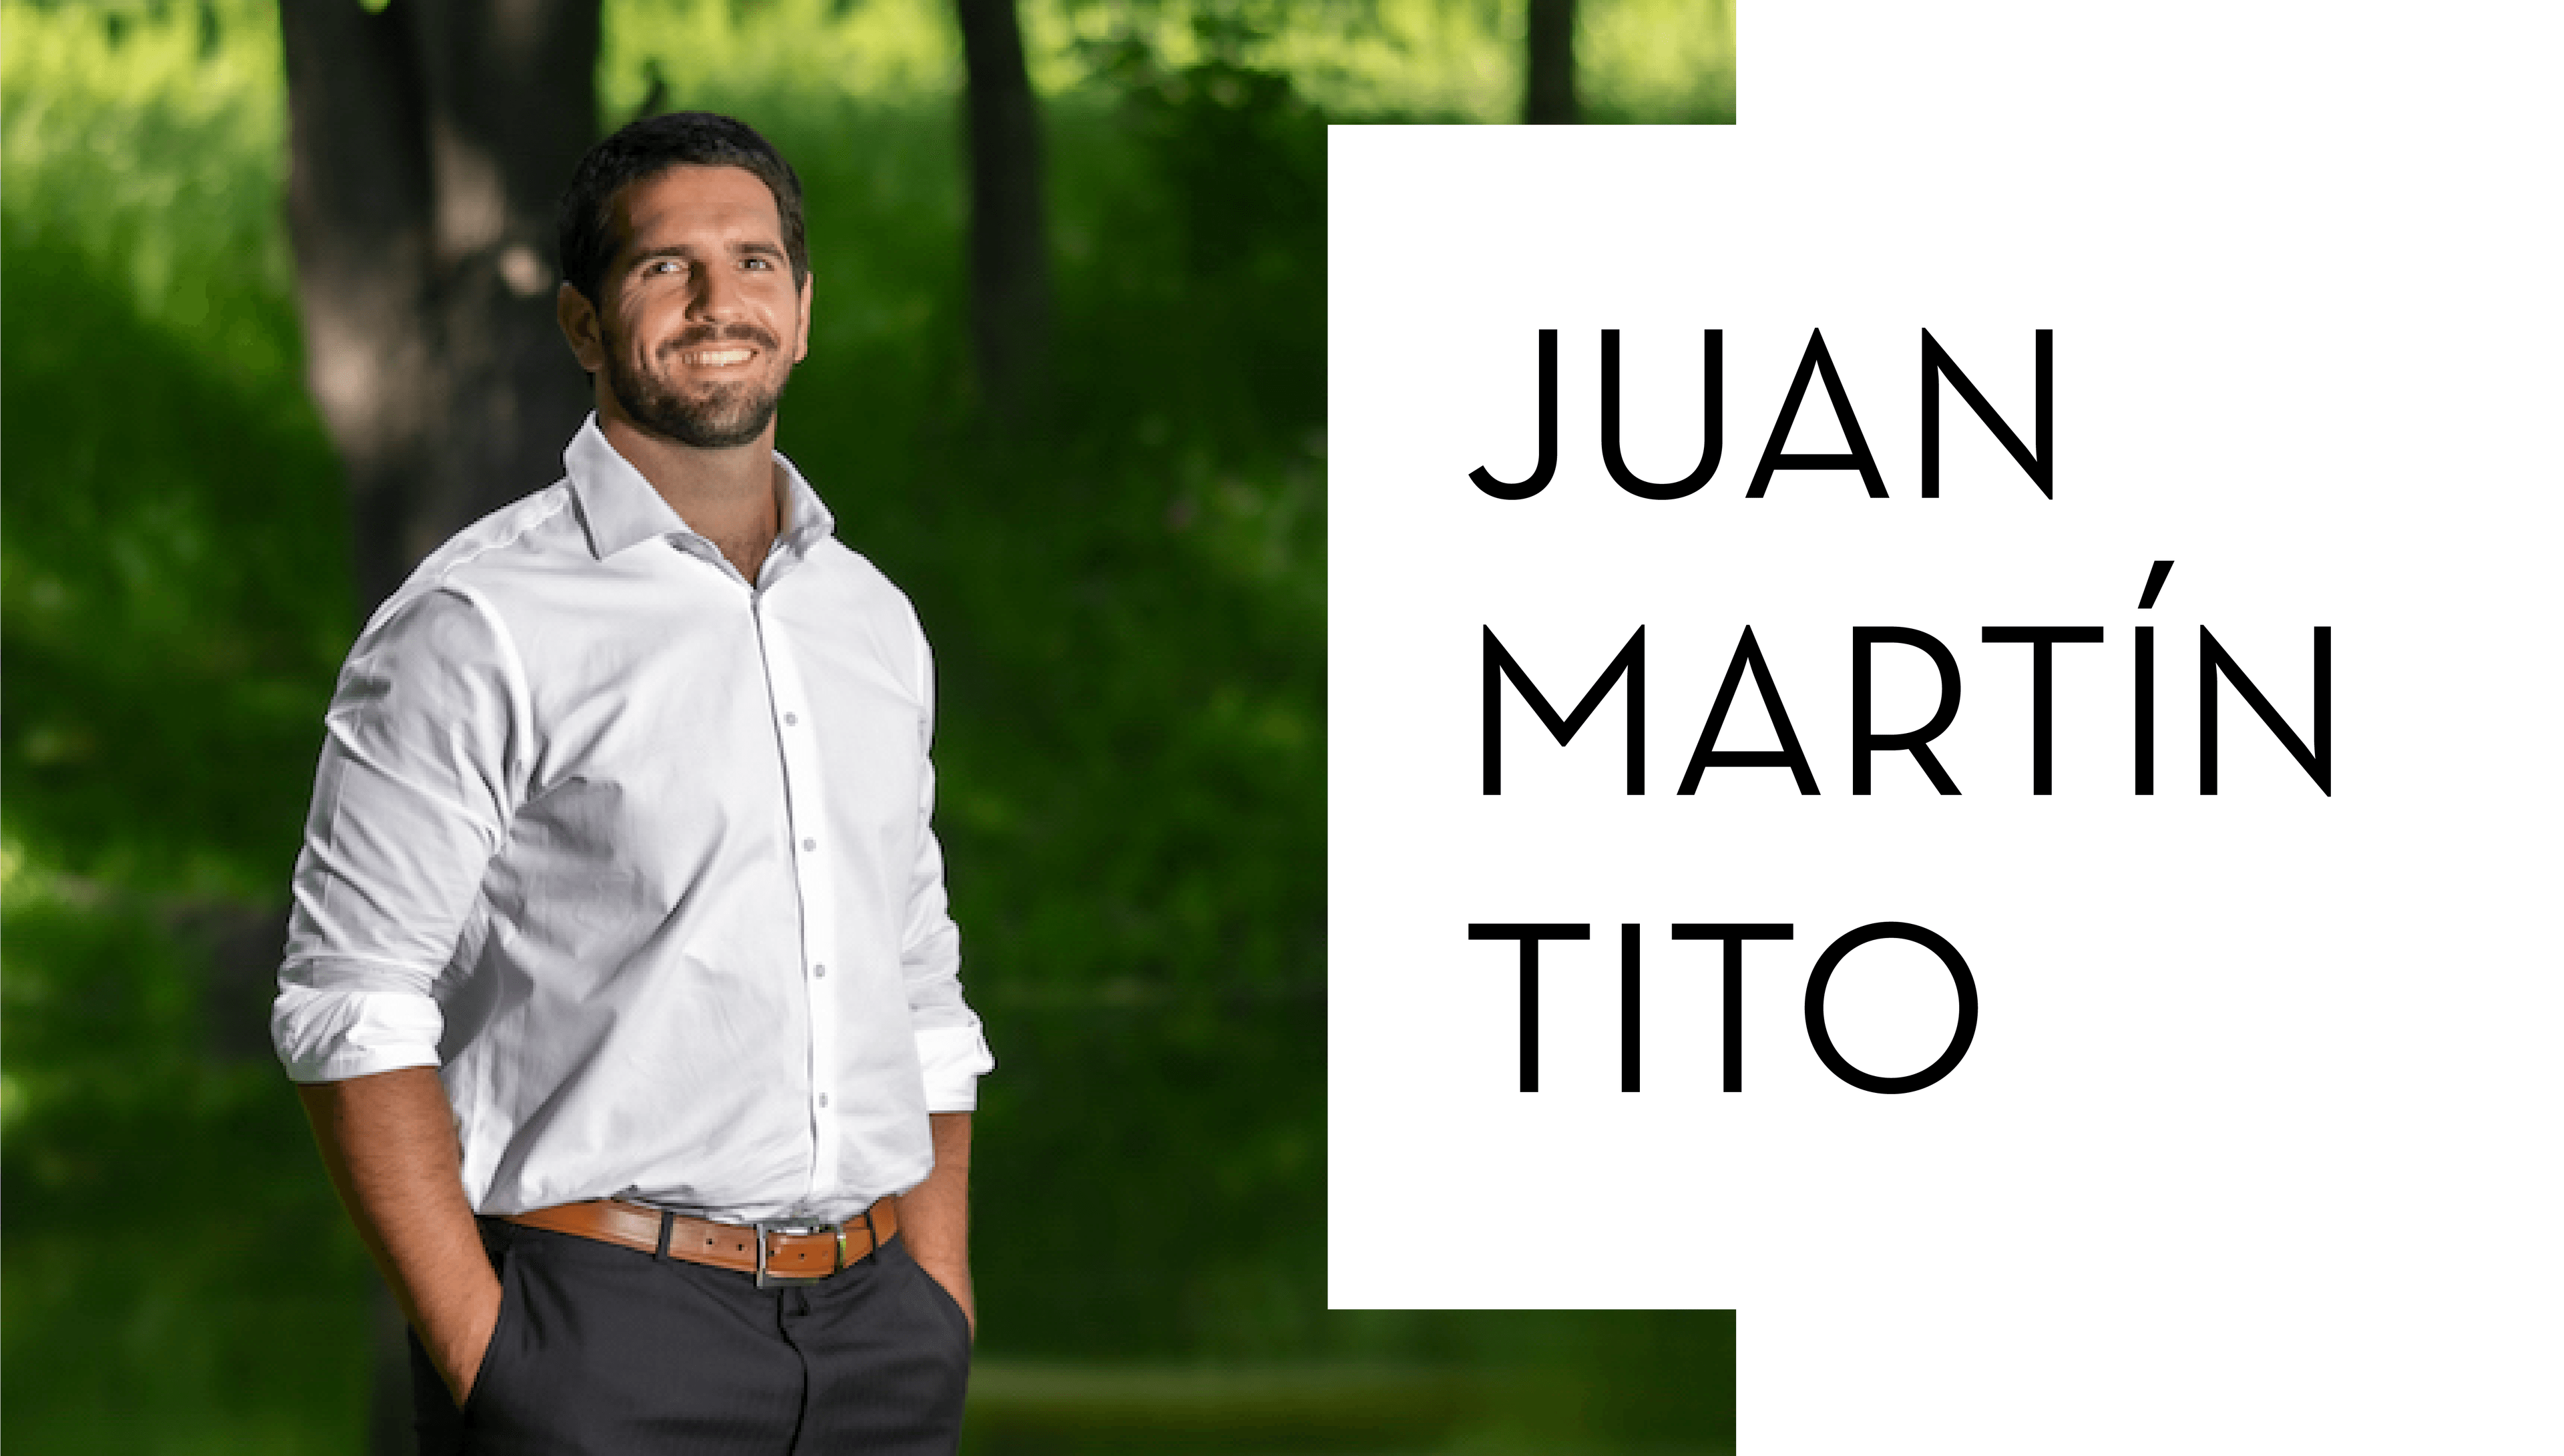 Juan Martin Tito